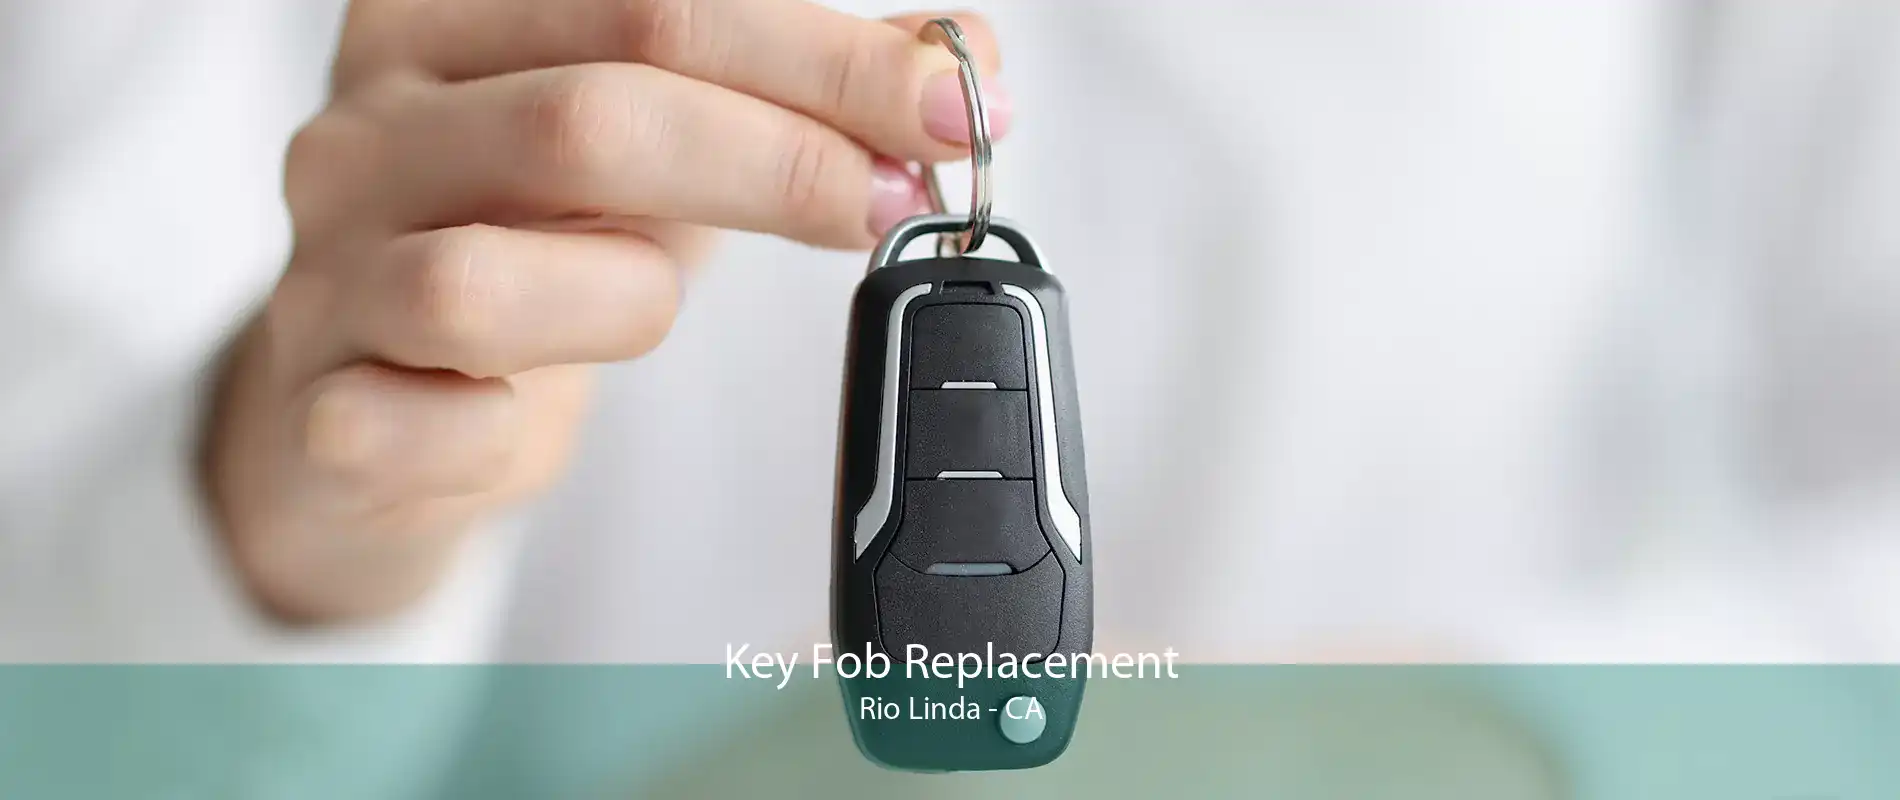 Key Fob Replacement Rio Linda - CA